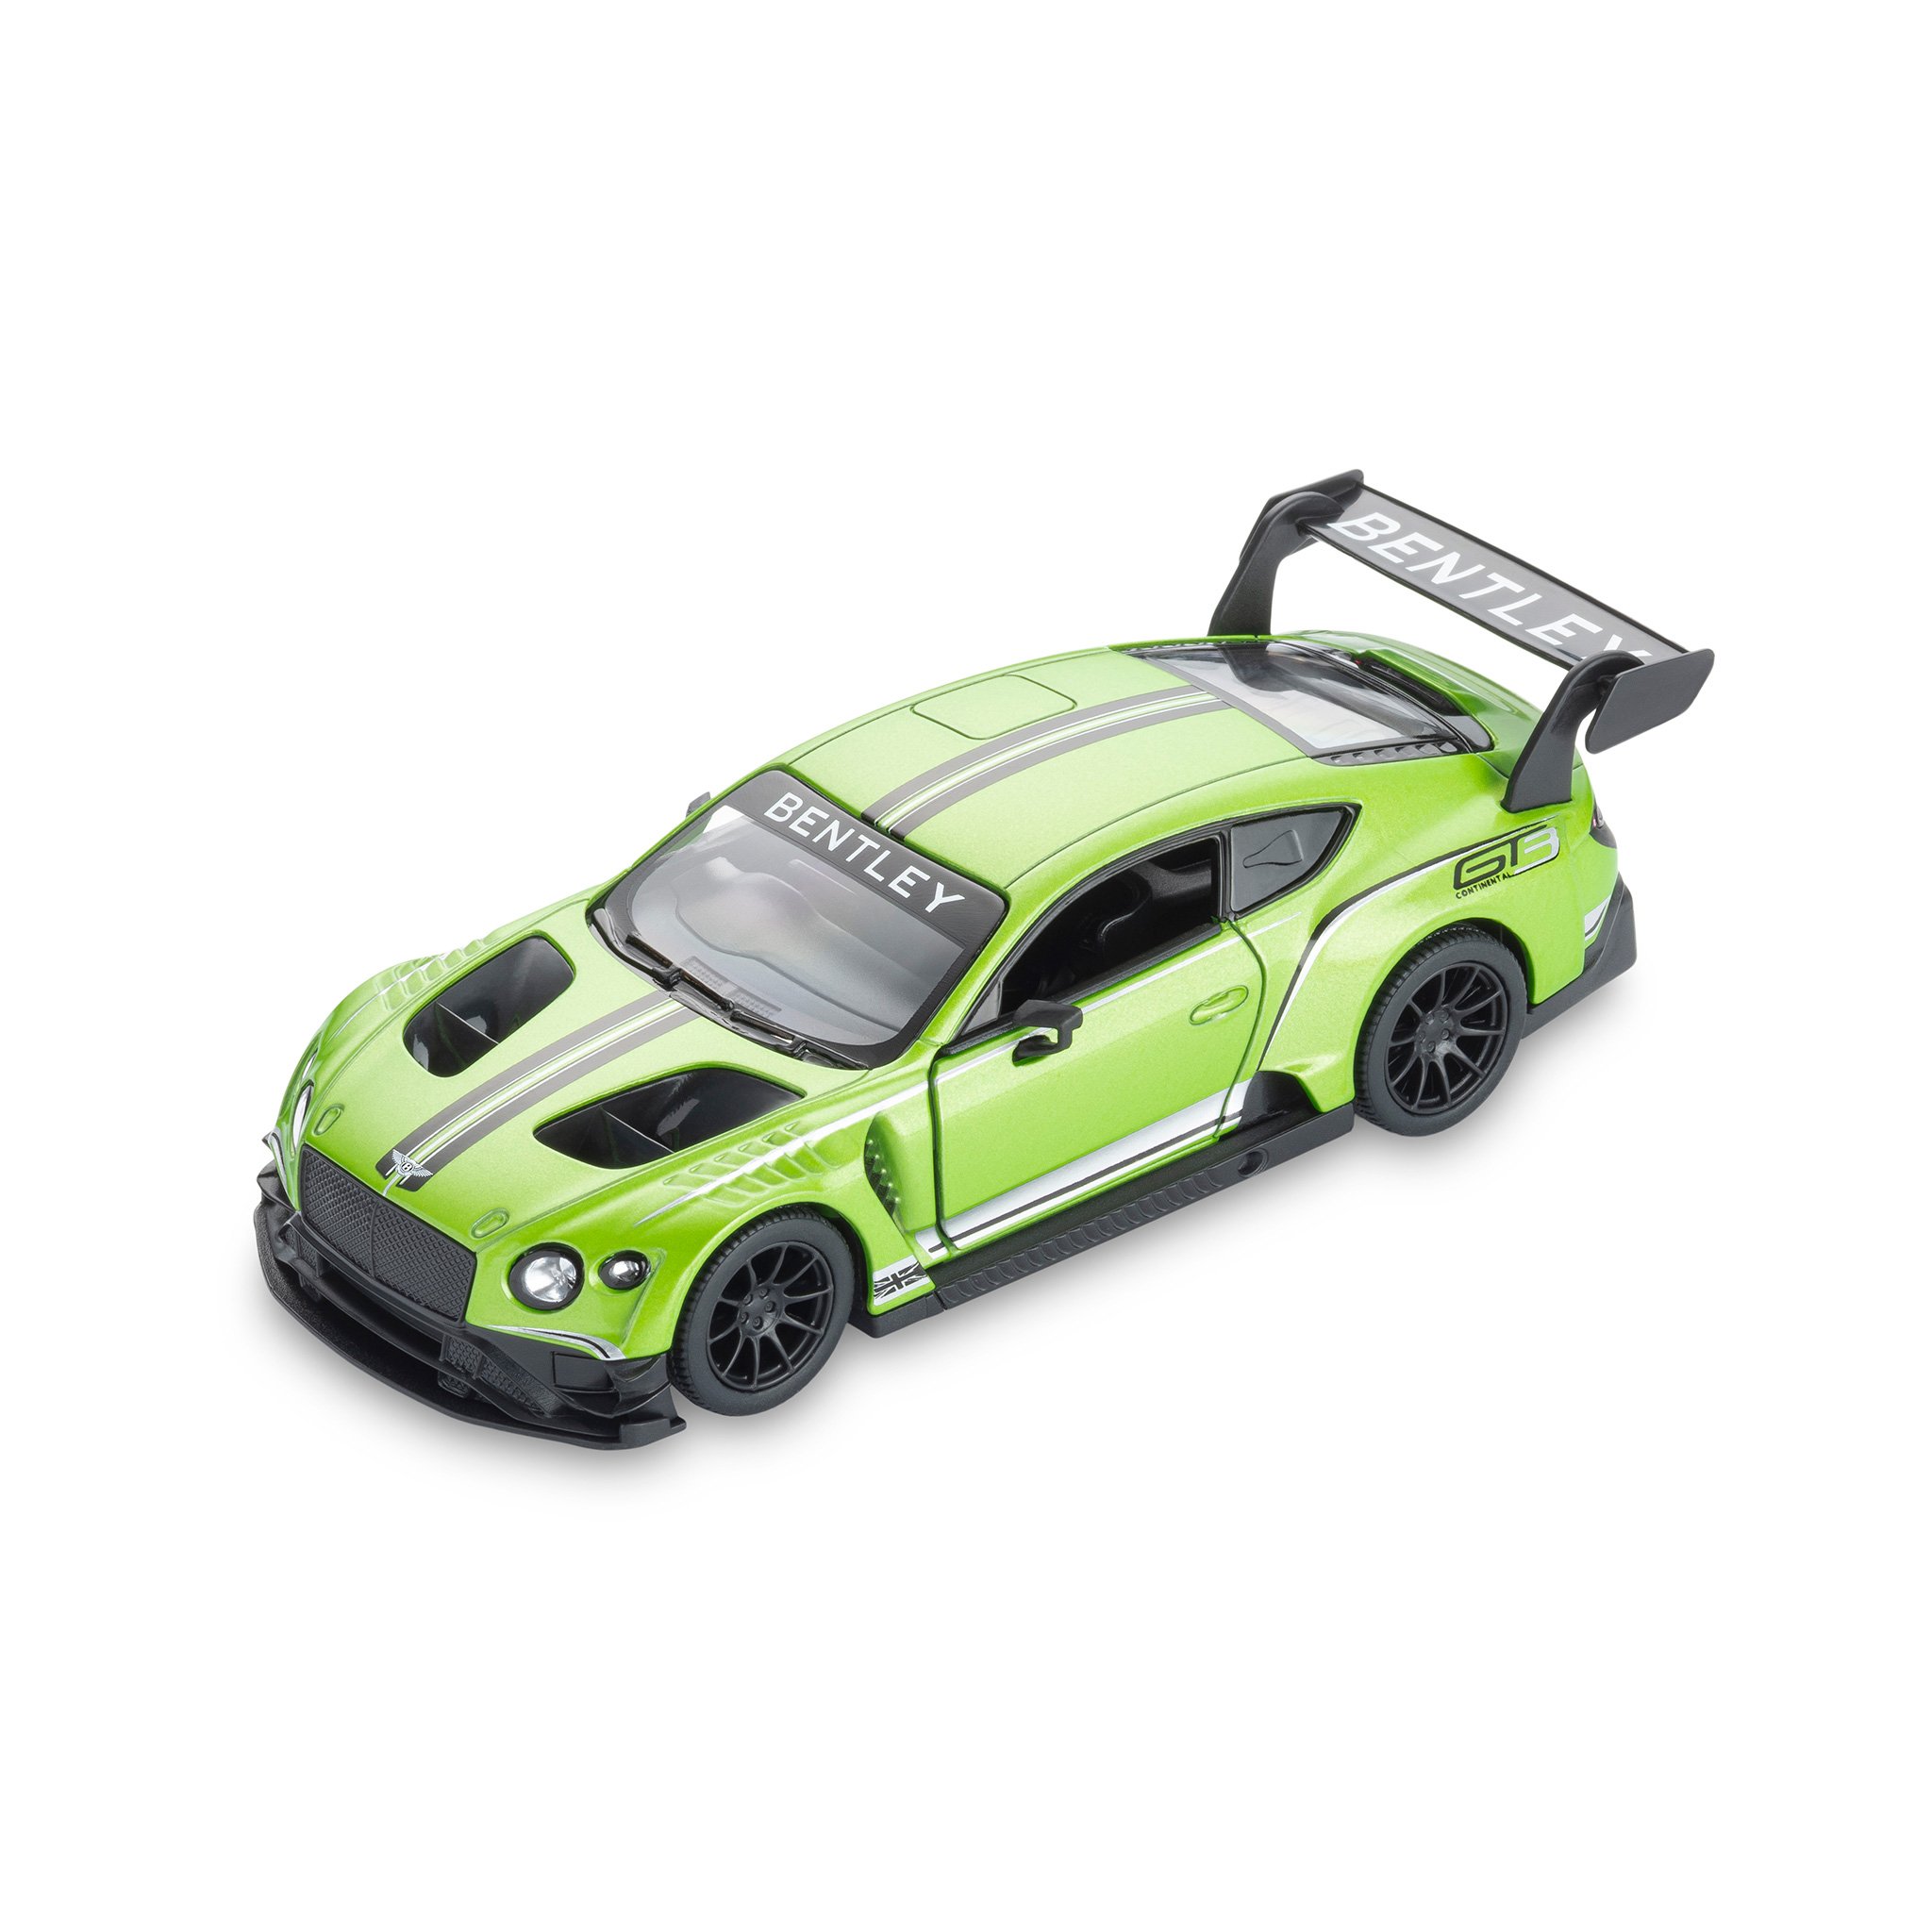 賓利 Continental GT3 玩具跑車 (綠色)